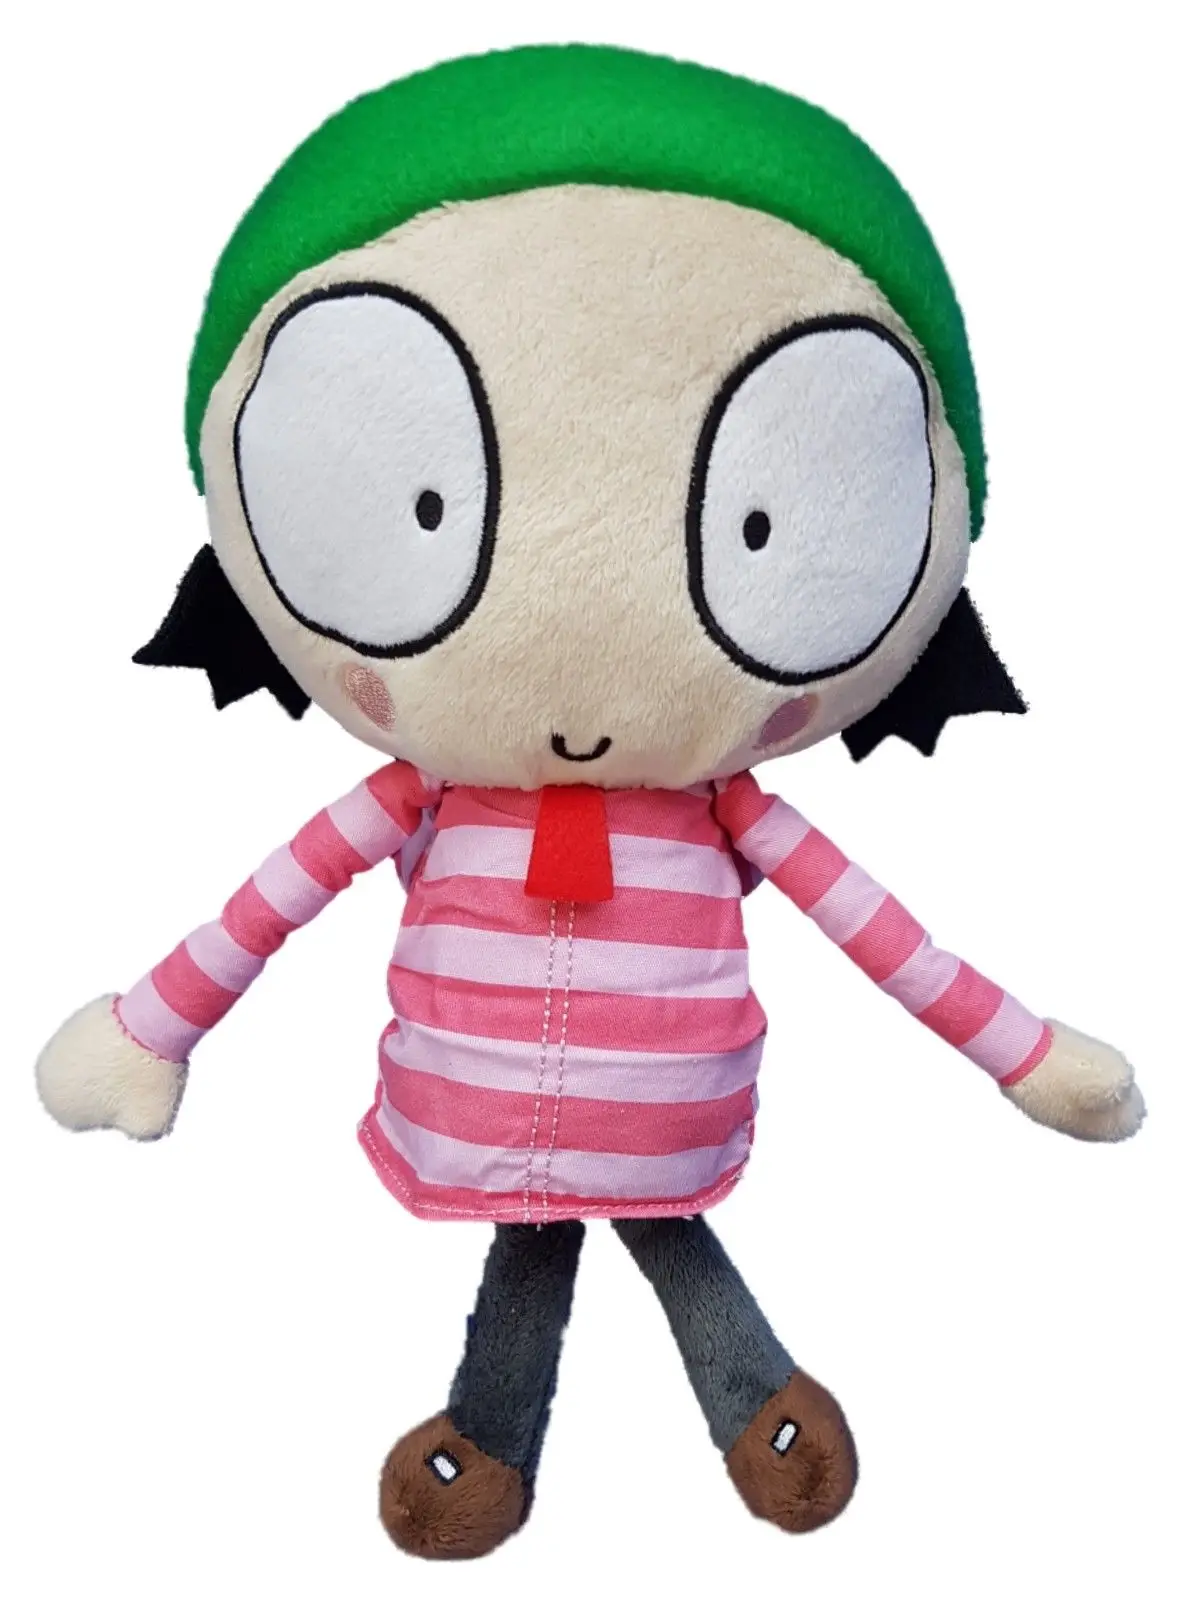 1" анимация Сары и утенок плюшевая игрушка девочка чучела кукла для детей подарок